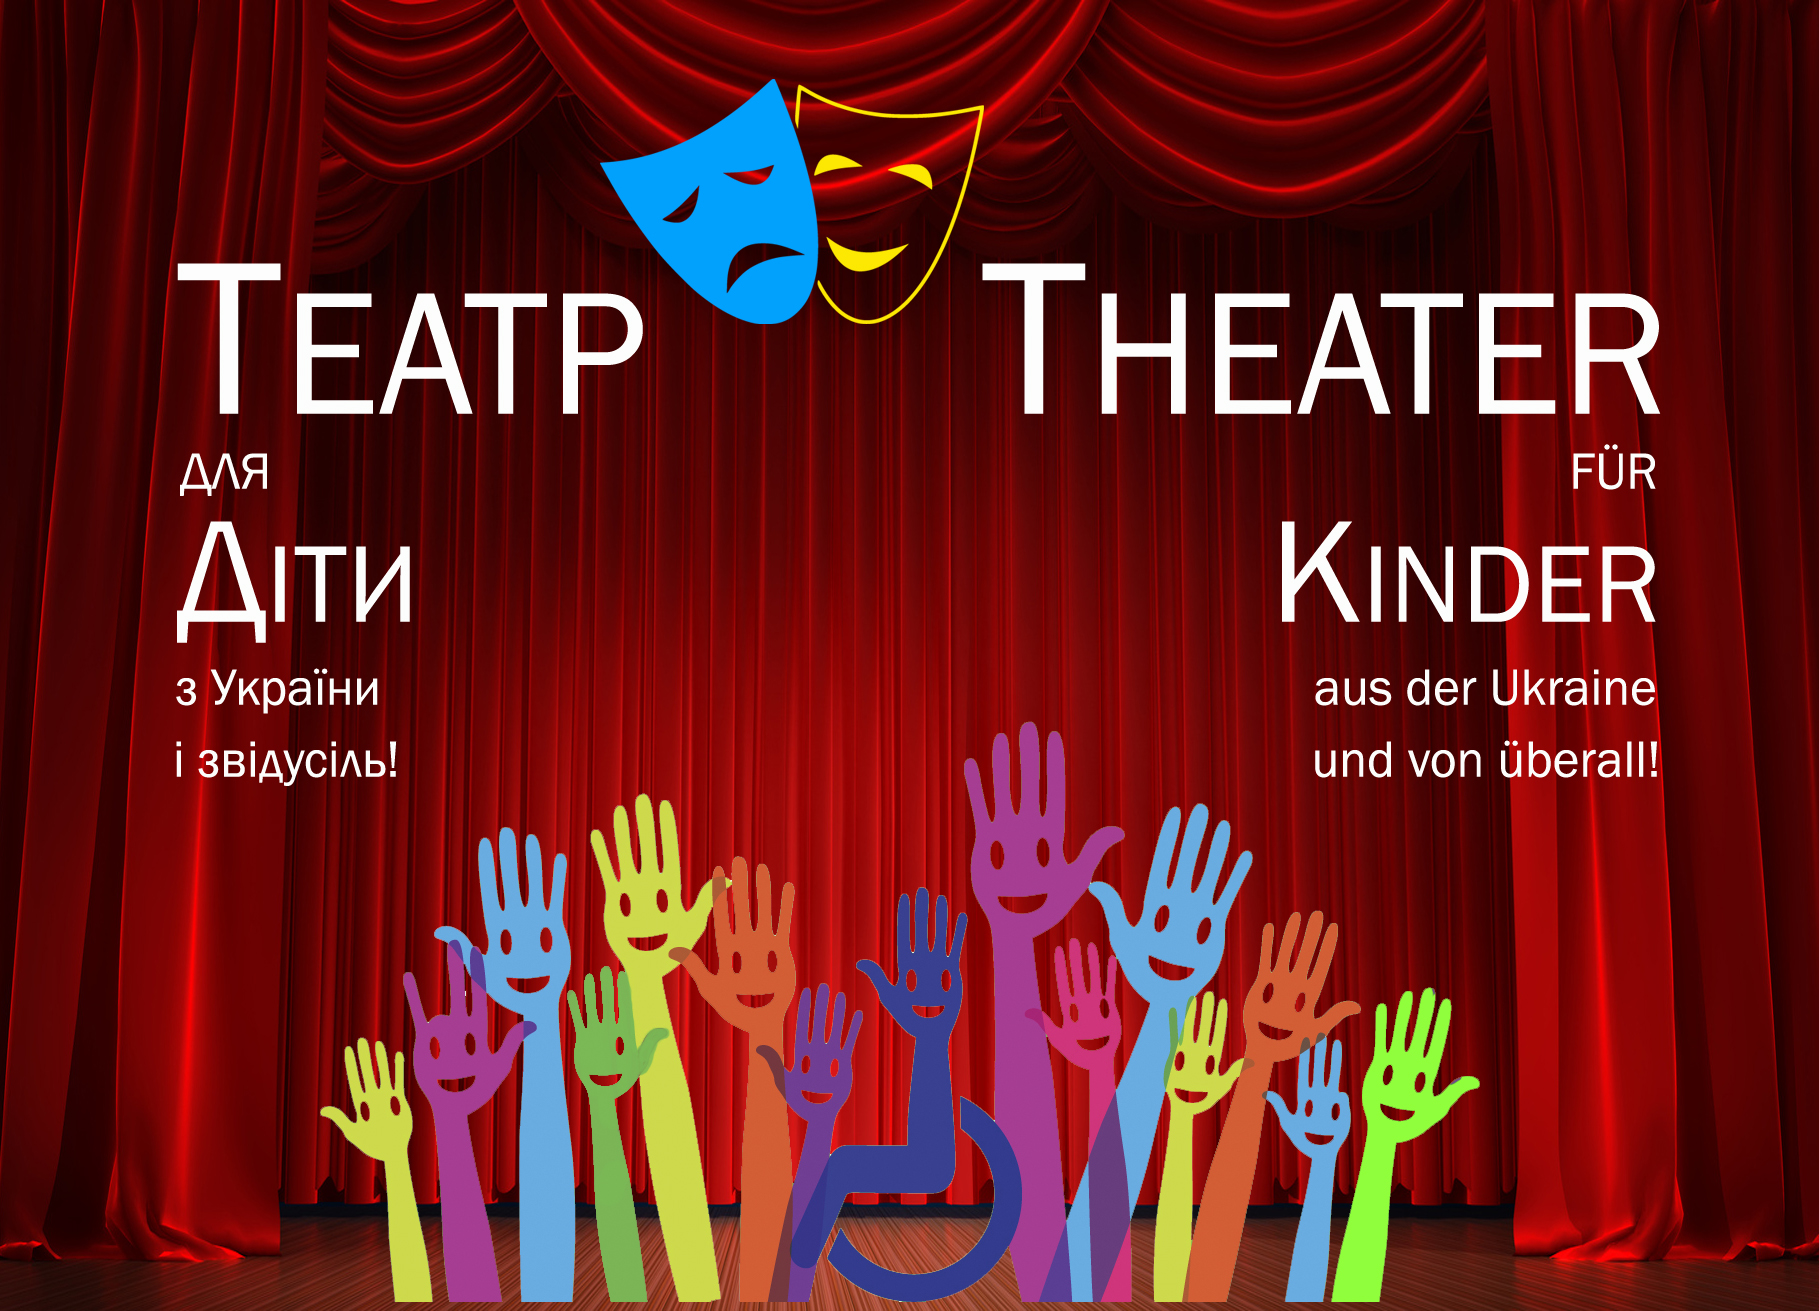 Postkarte zum Theater fuer Kinder aus der Ukraine und von überall